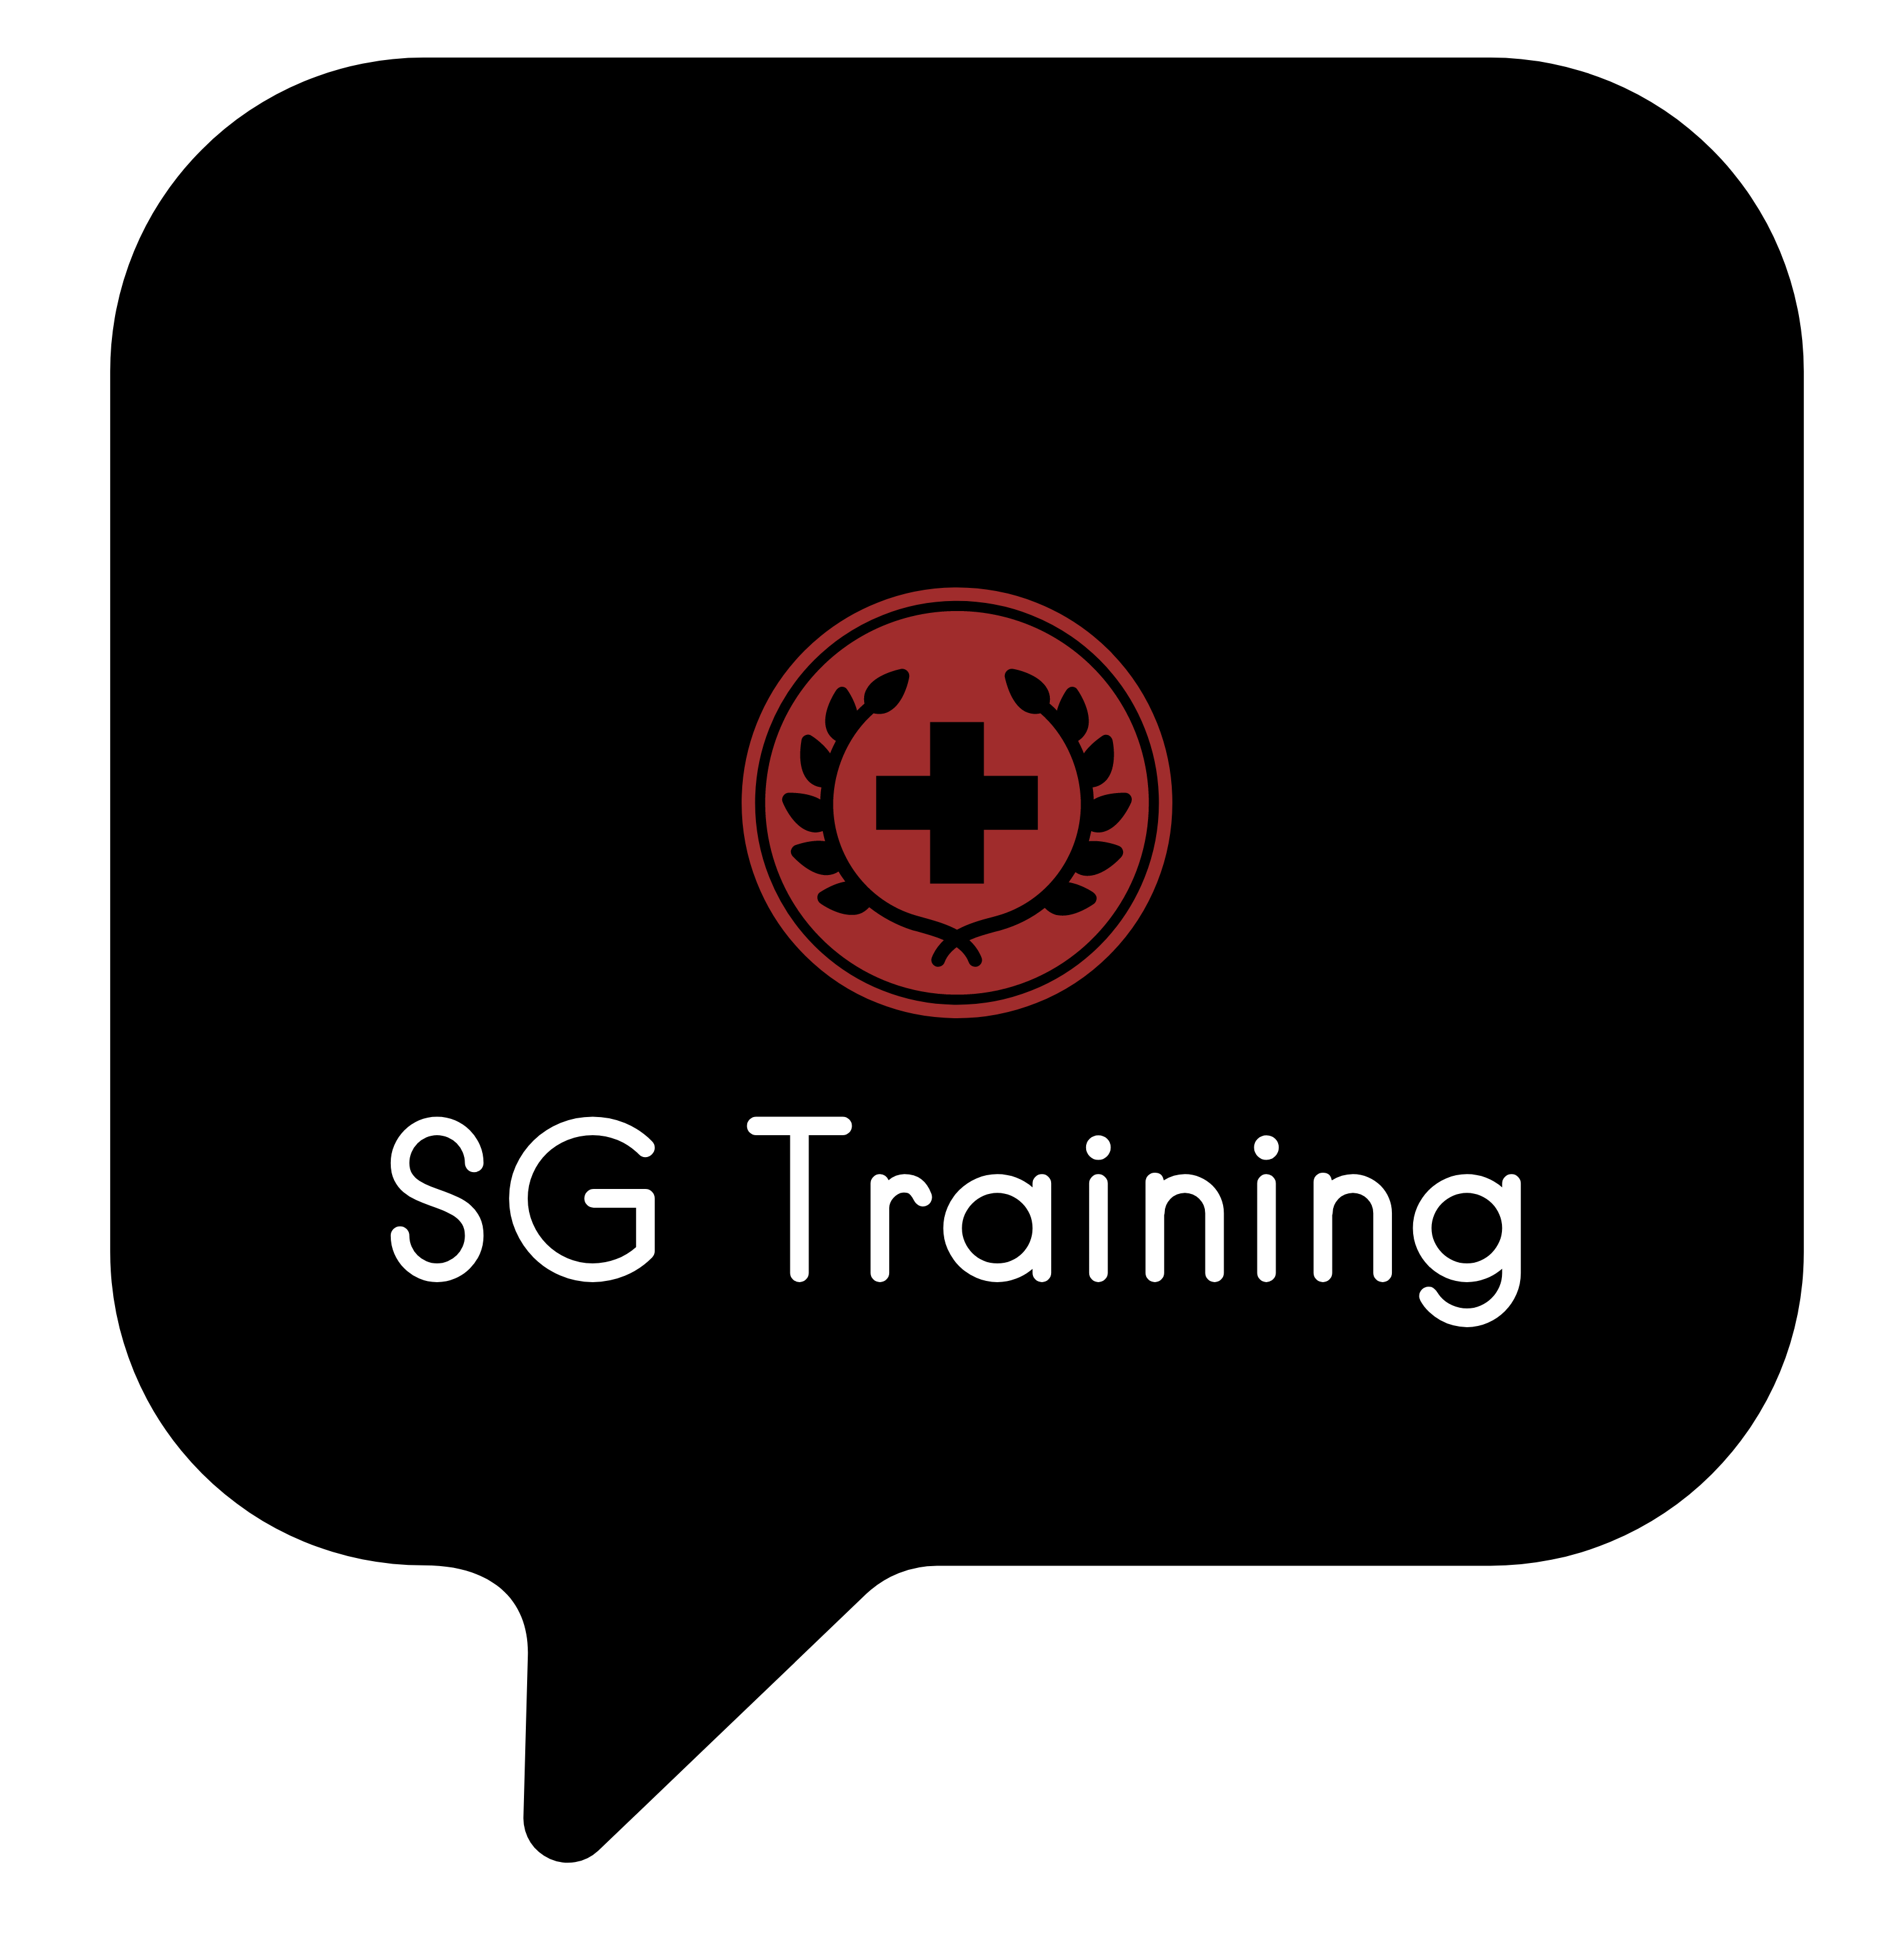 Steven Govinden Trading as SG Training